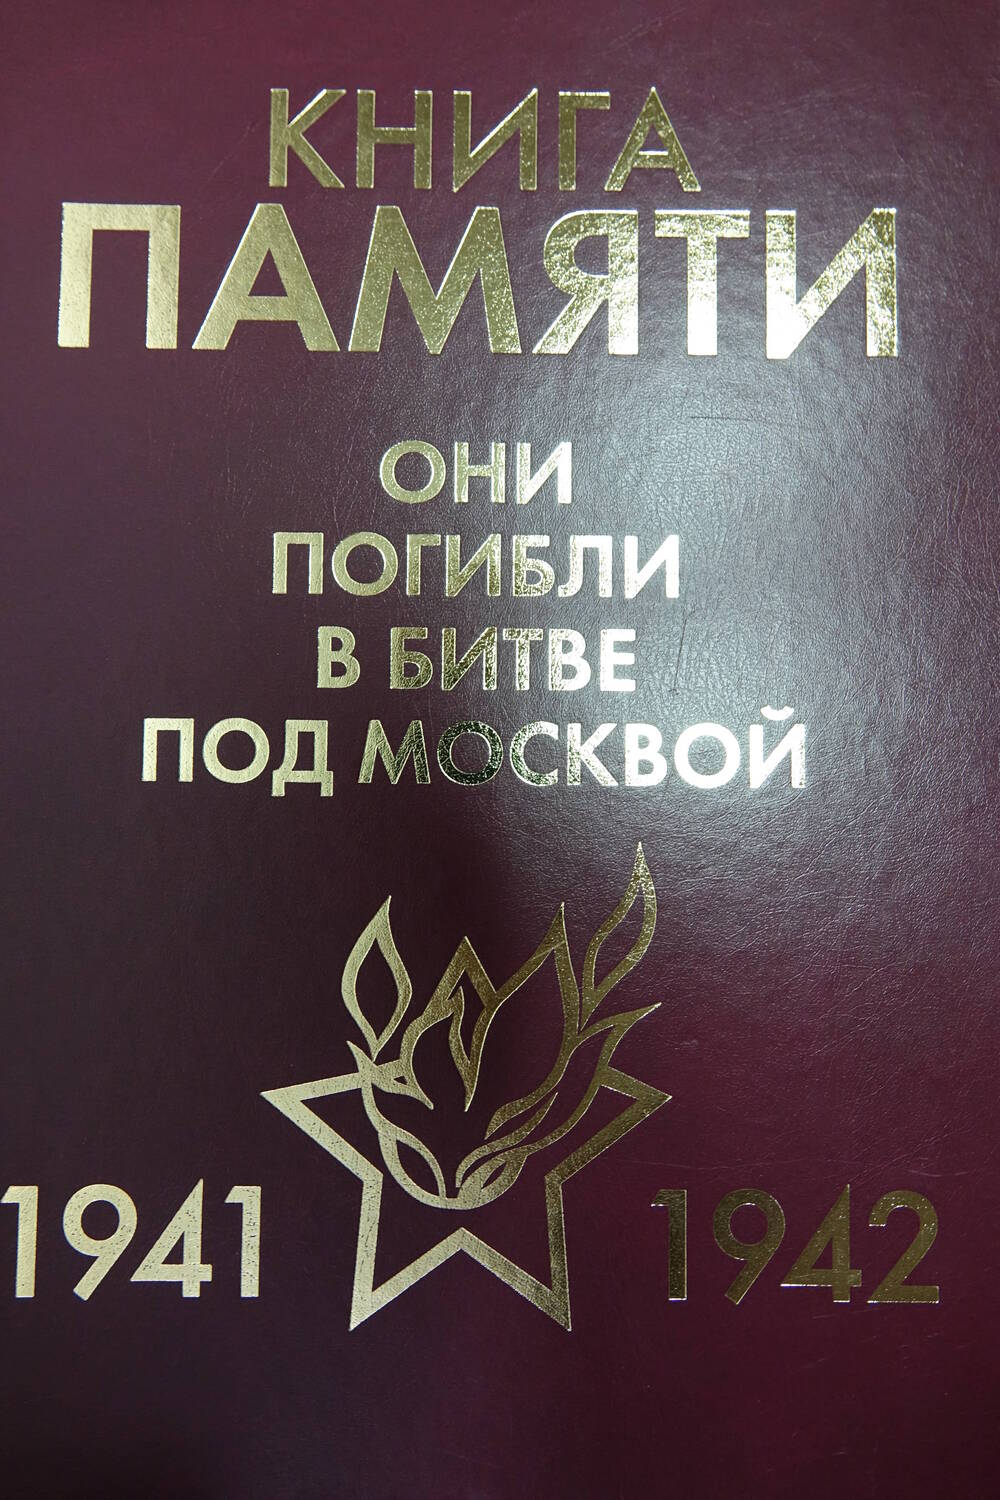 Книга Памяти «Они погибли в битве под Москвой  1941-1942гг.» Том 11 Часть I  «П»